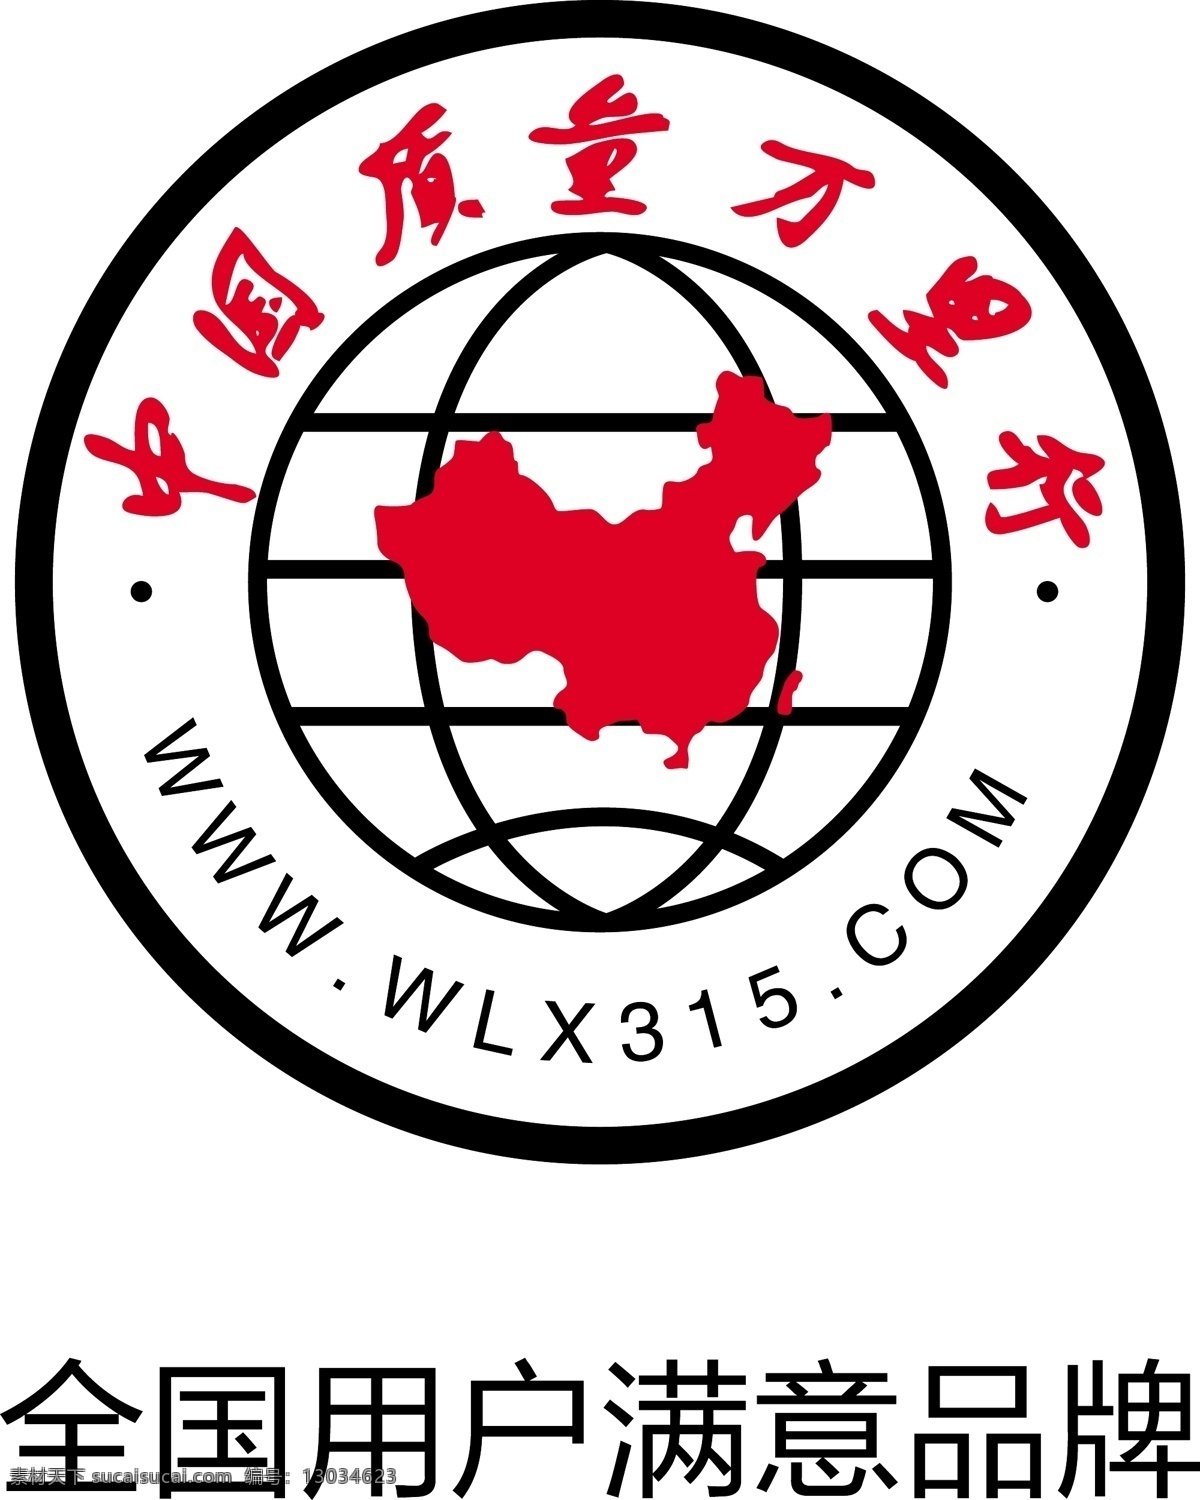 标识标志图标 全国 用户 满意 品牌 中国 质量 万里 行 矢量 wl315 psd源文件